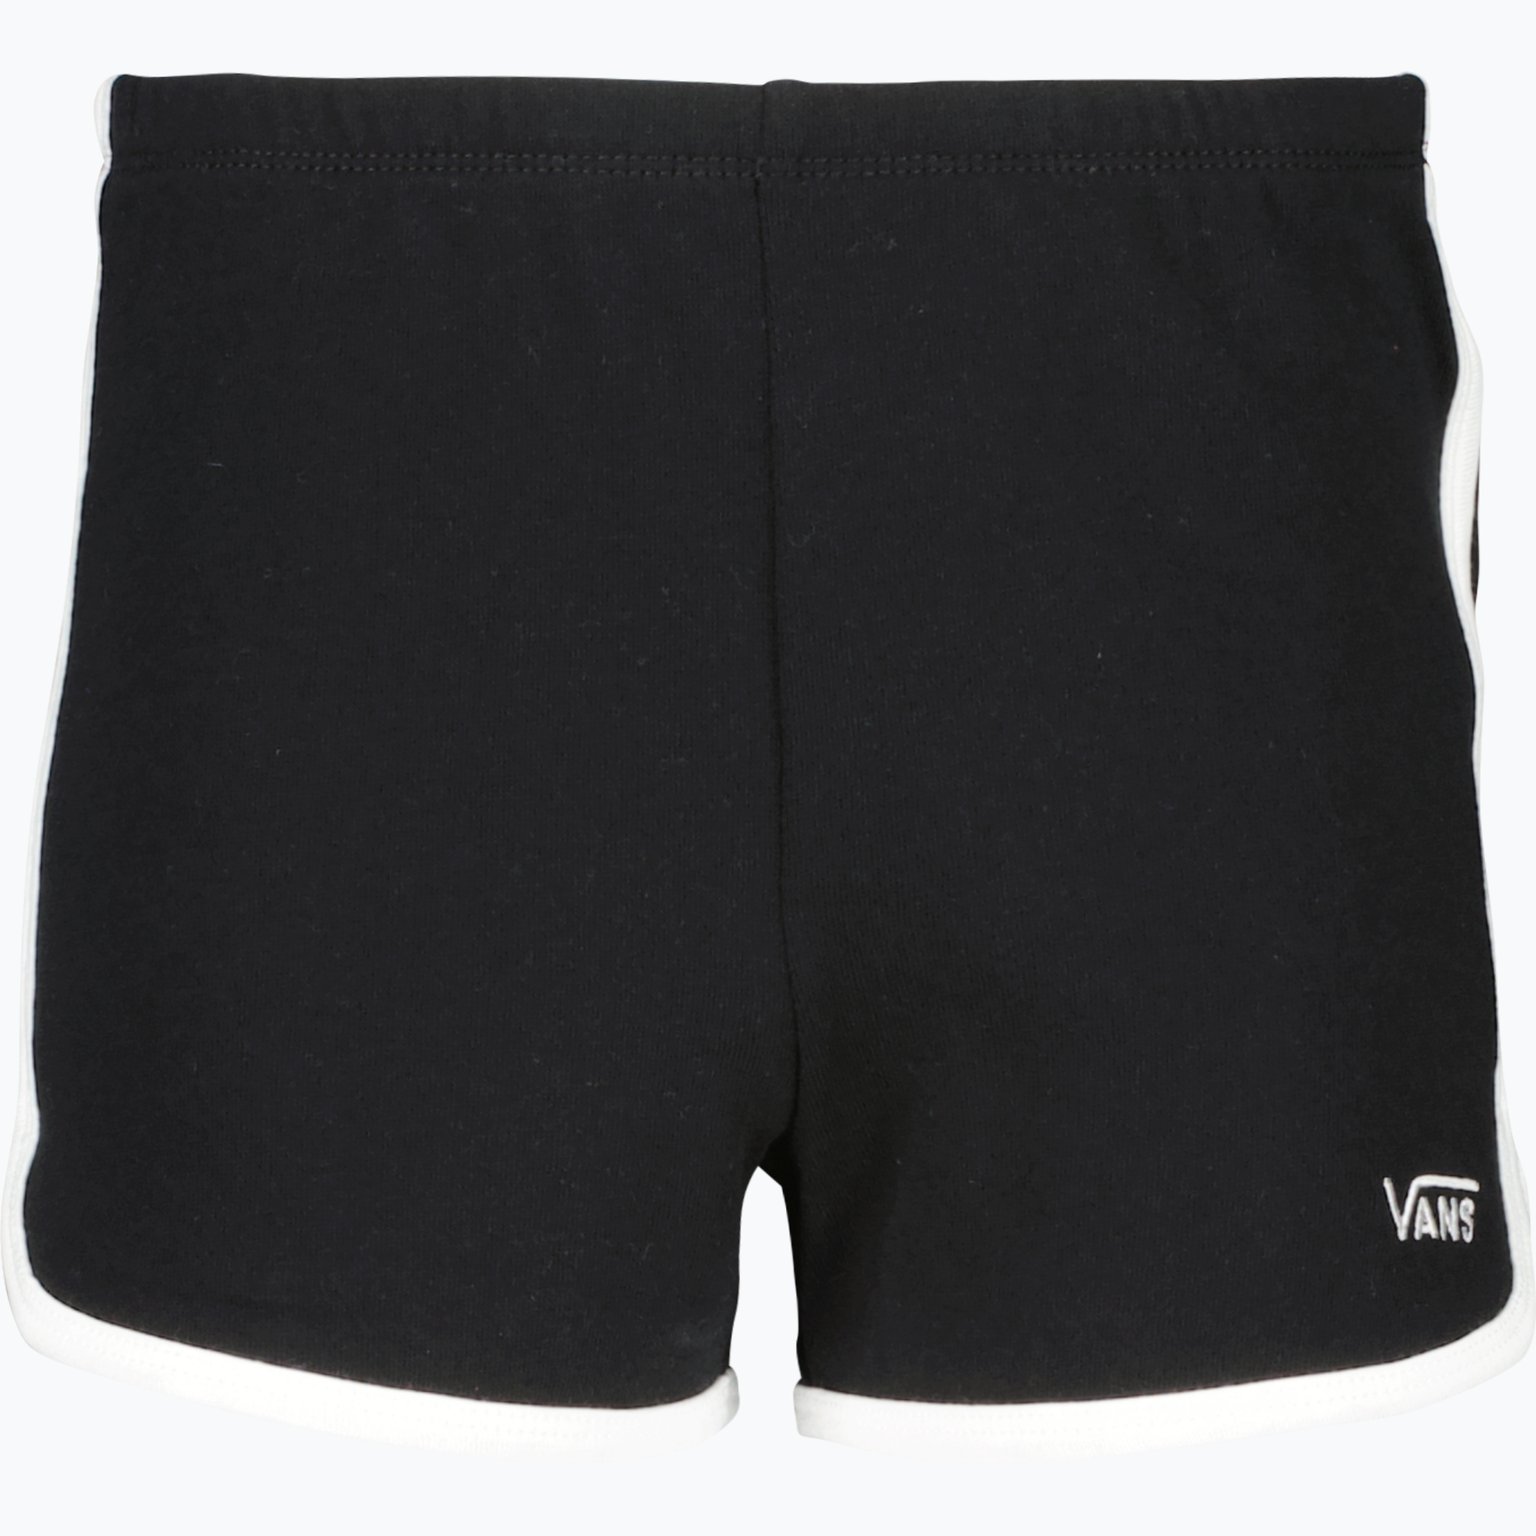 SAS JR shorts